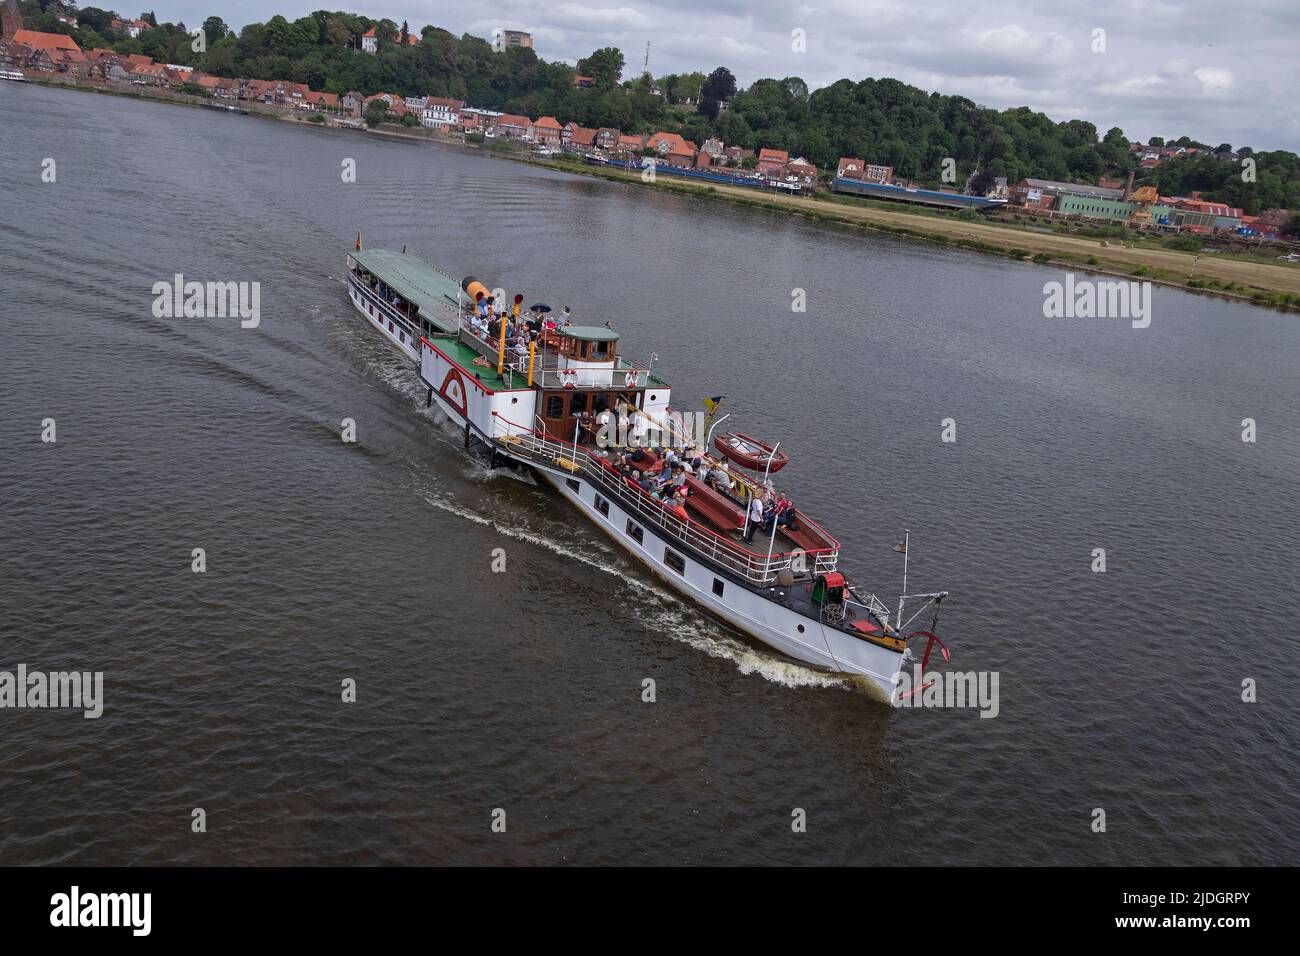 Paddle steamer Kaiser Wilhelm, Lauenburg, River Elbe, Schleswig-Holstein, Germany Stock Photo